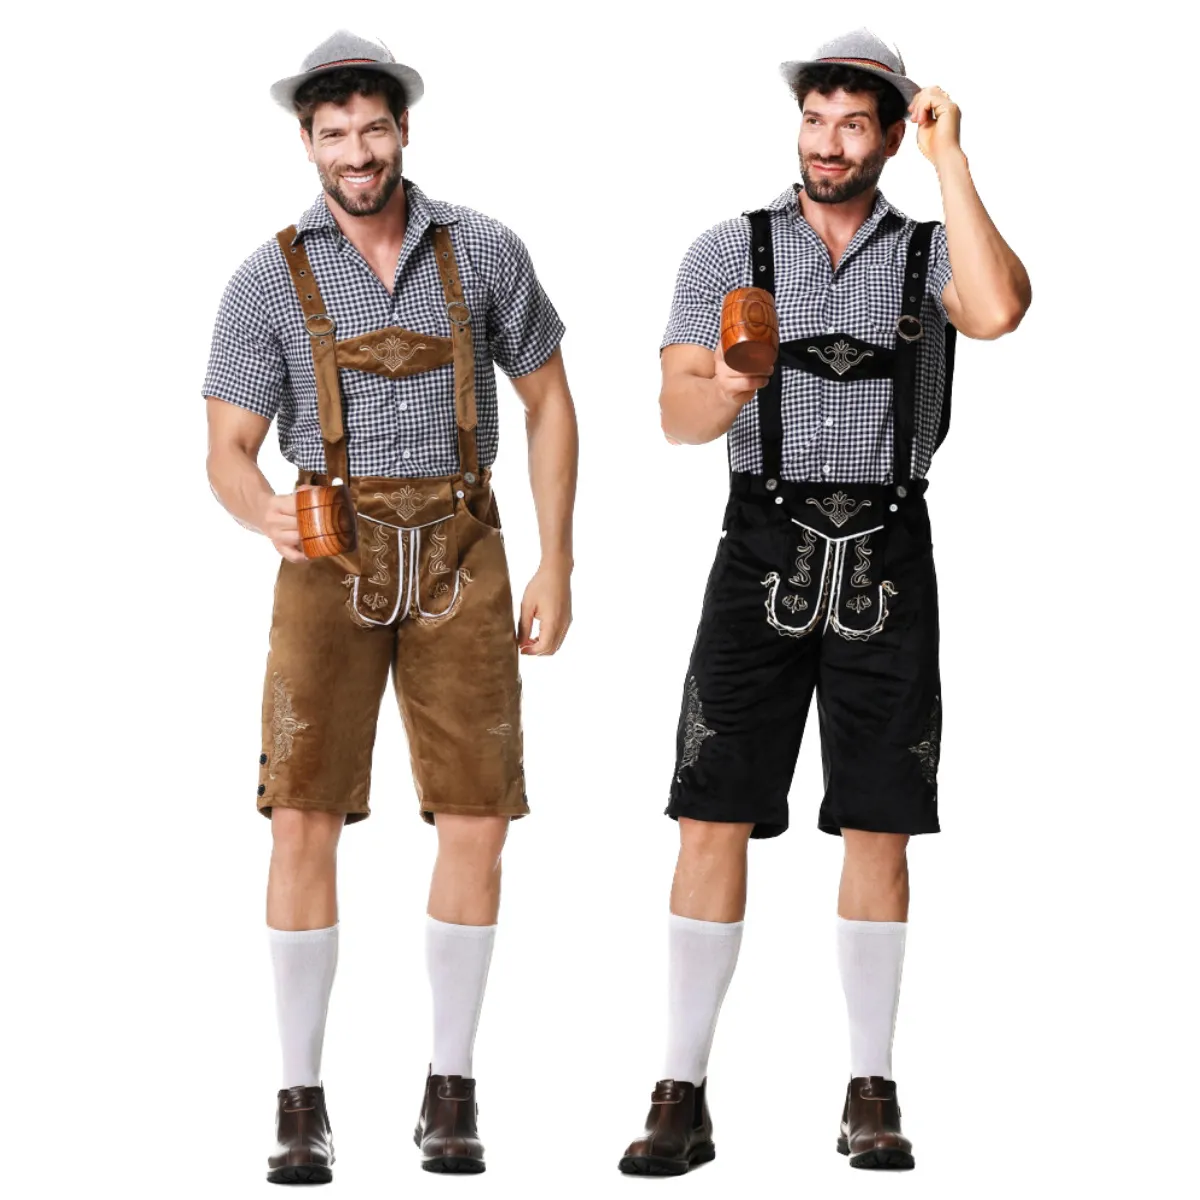 Prawdziwy strzał Niemiecki kostium Oktoberfest w stylu europejskim Plus Size Plus Suspint Pants Piwo strój